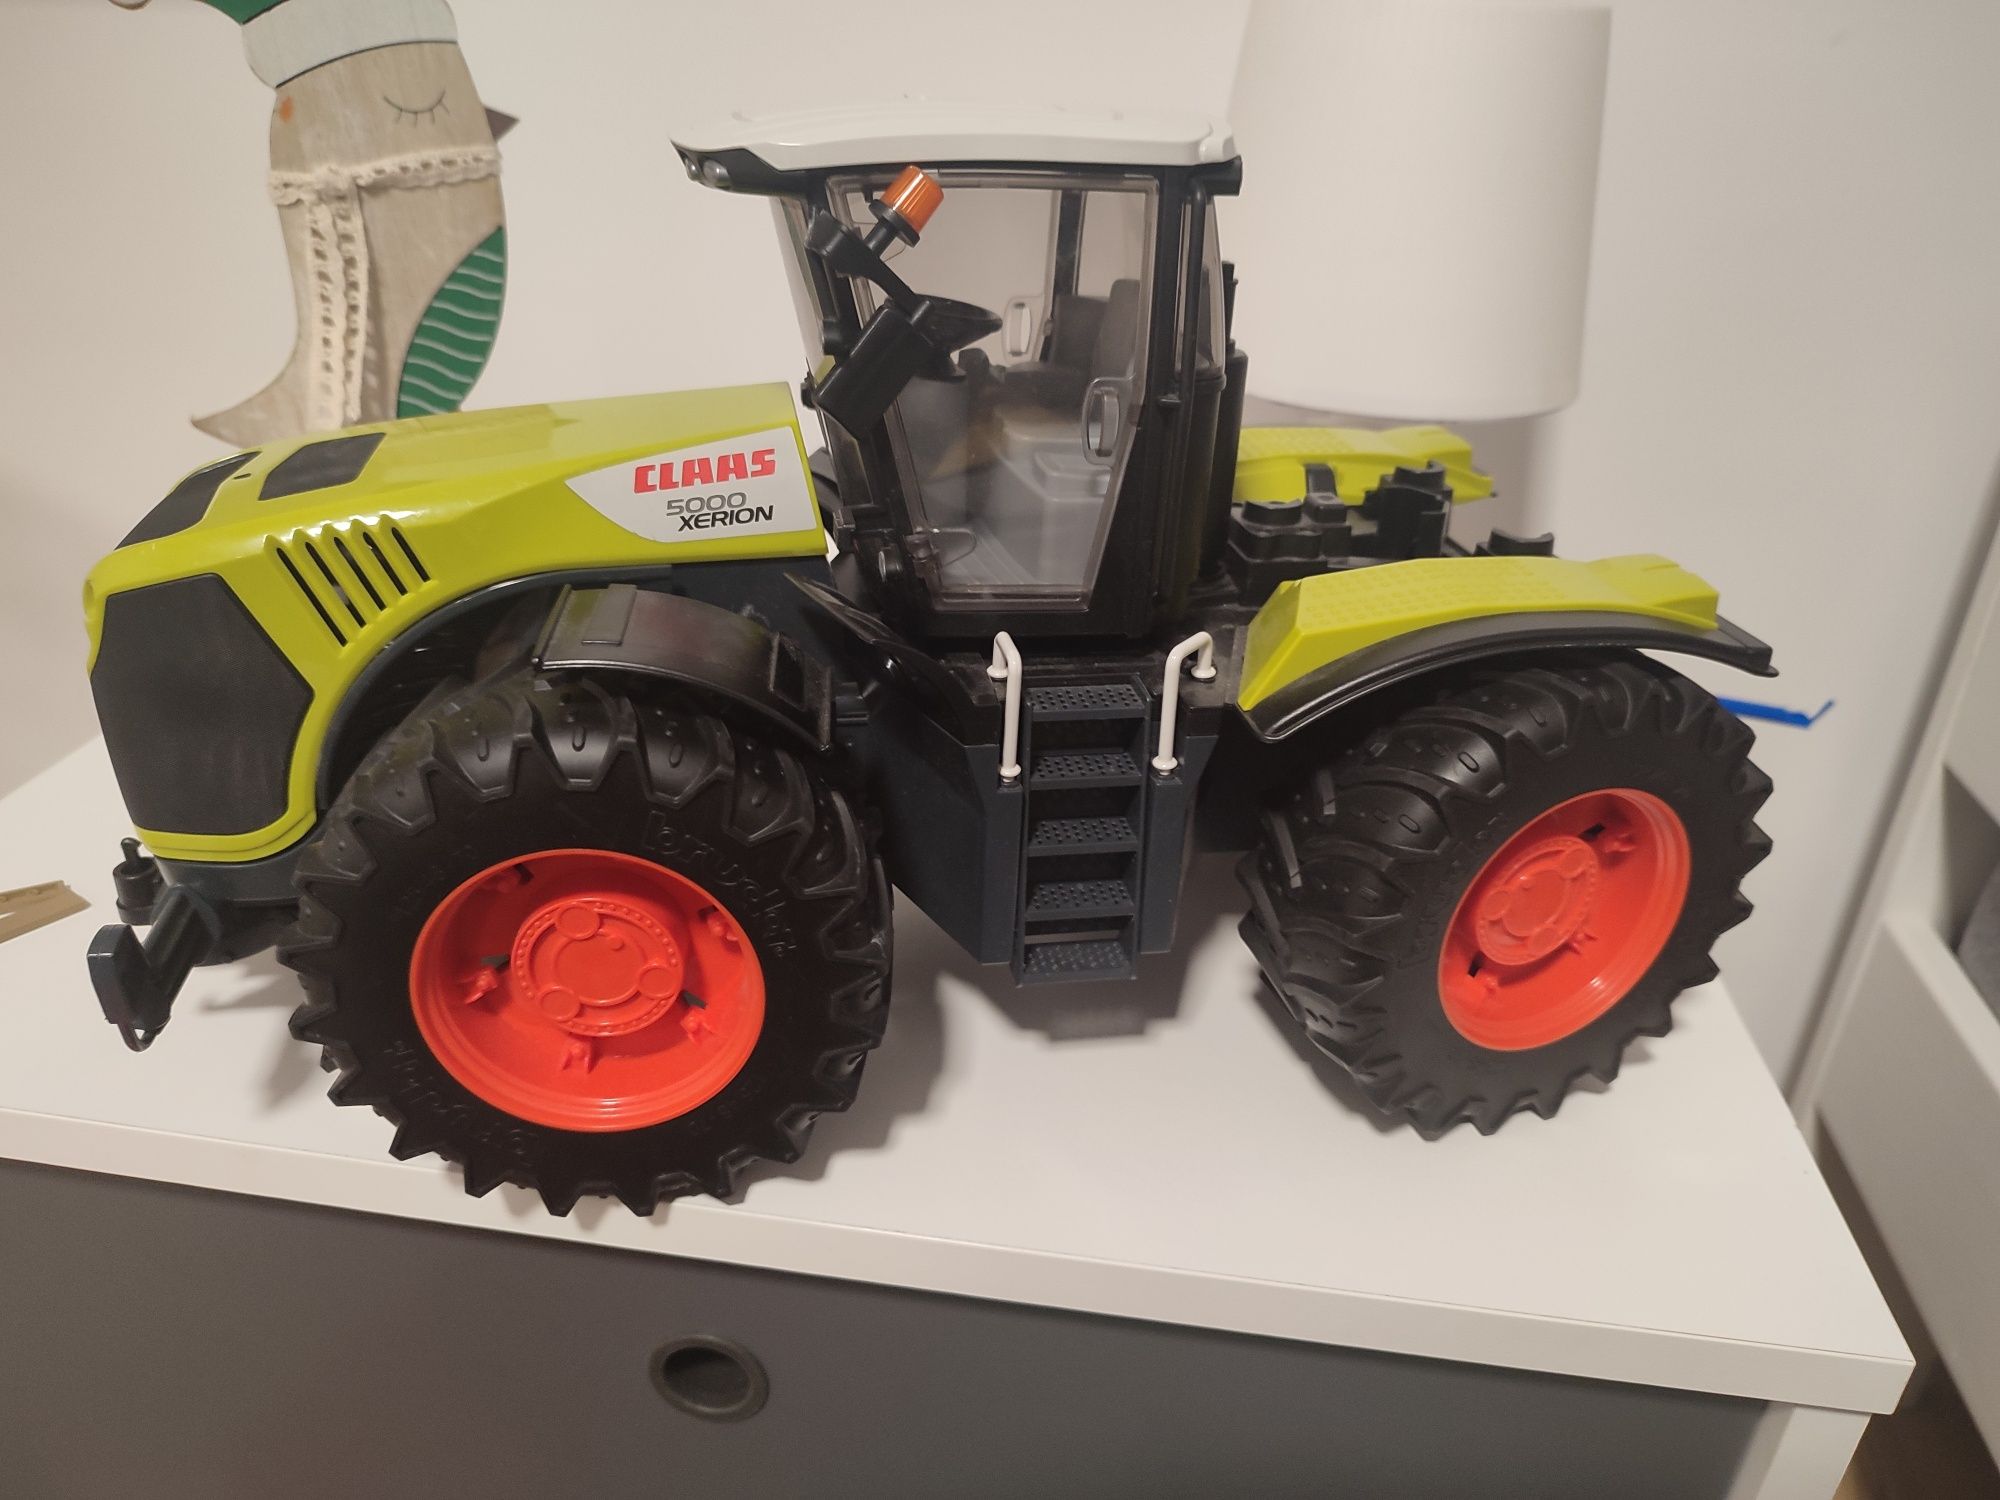 Zabawka traktor Claas 500 xerion